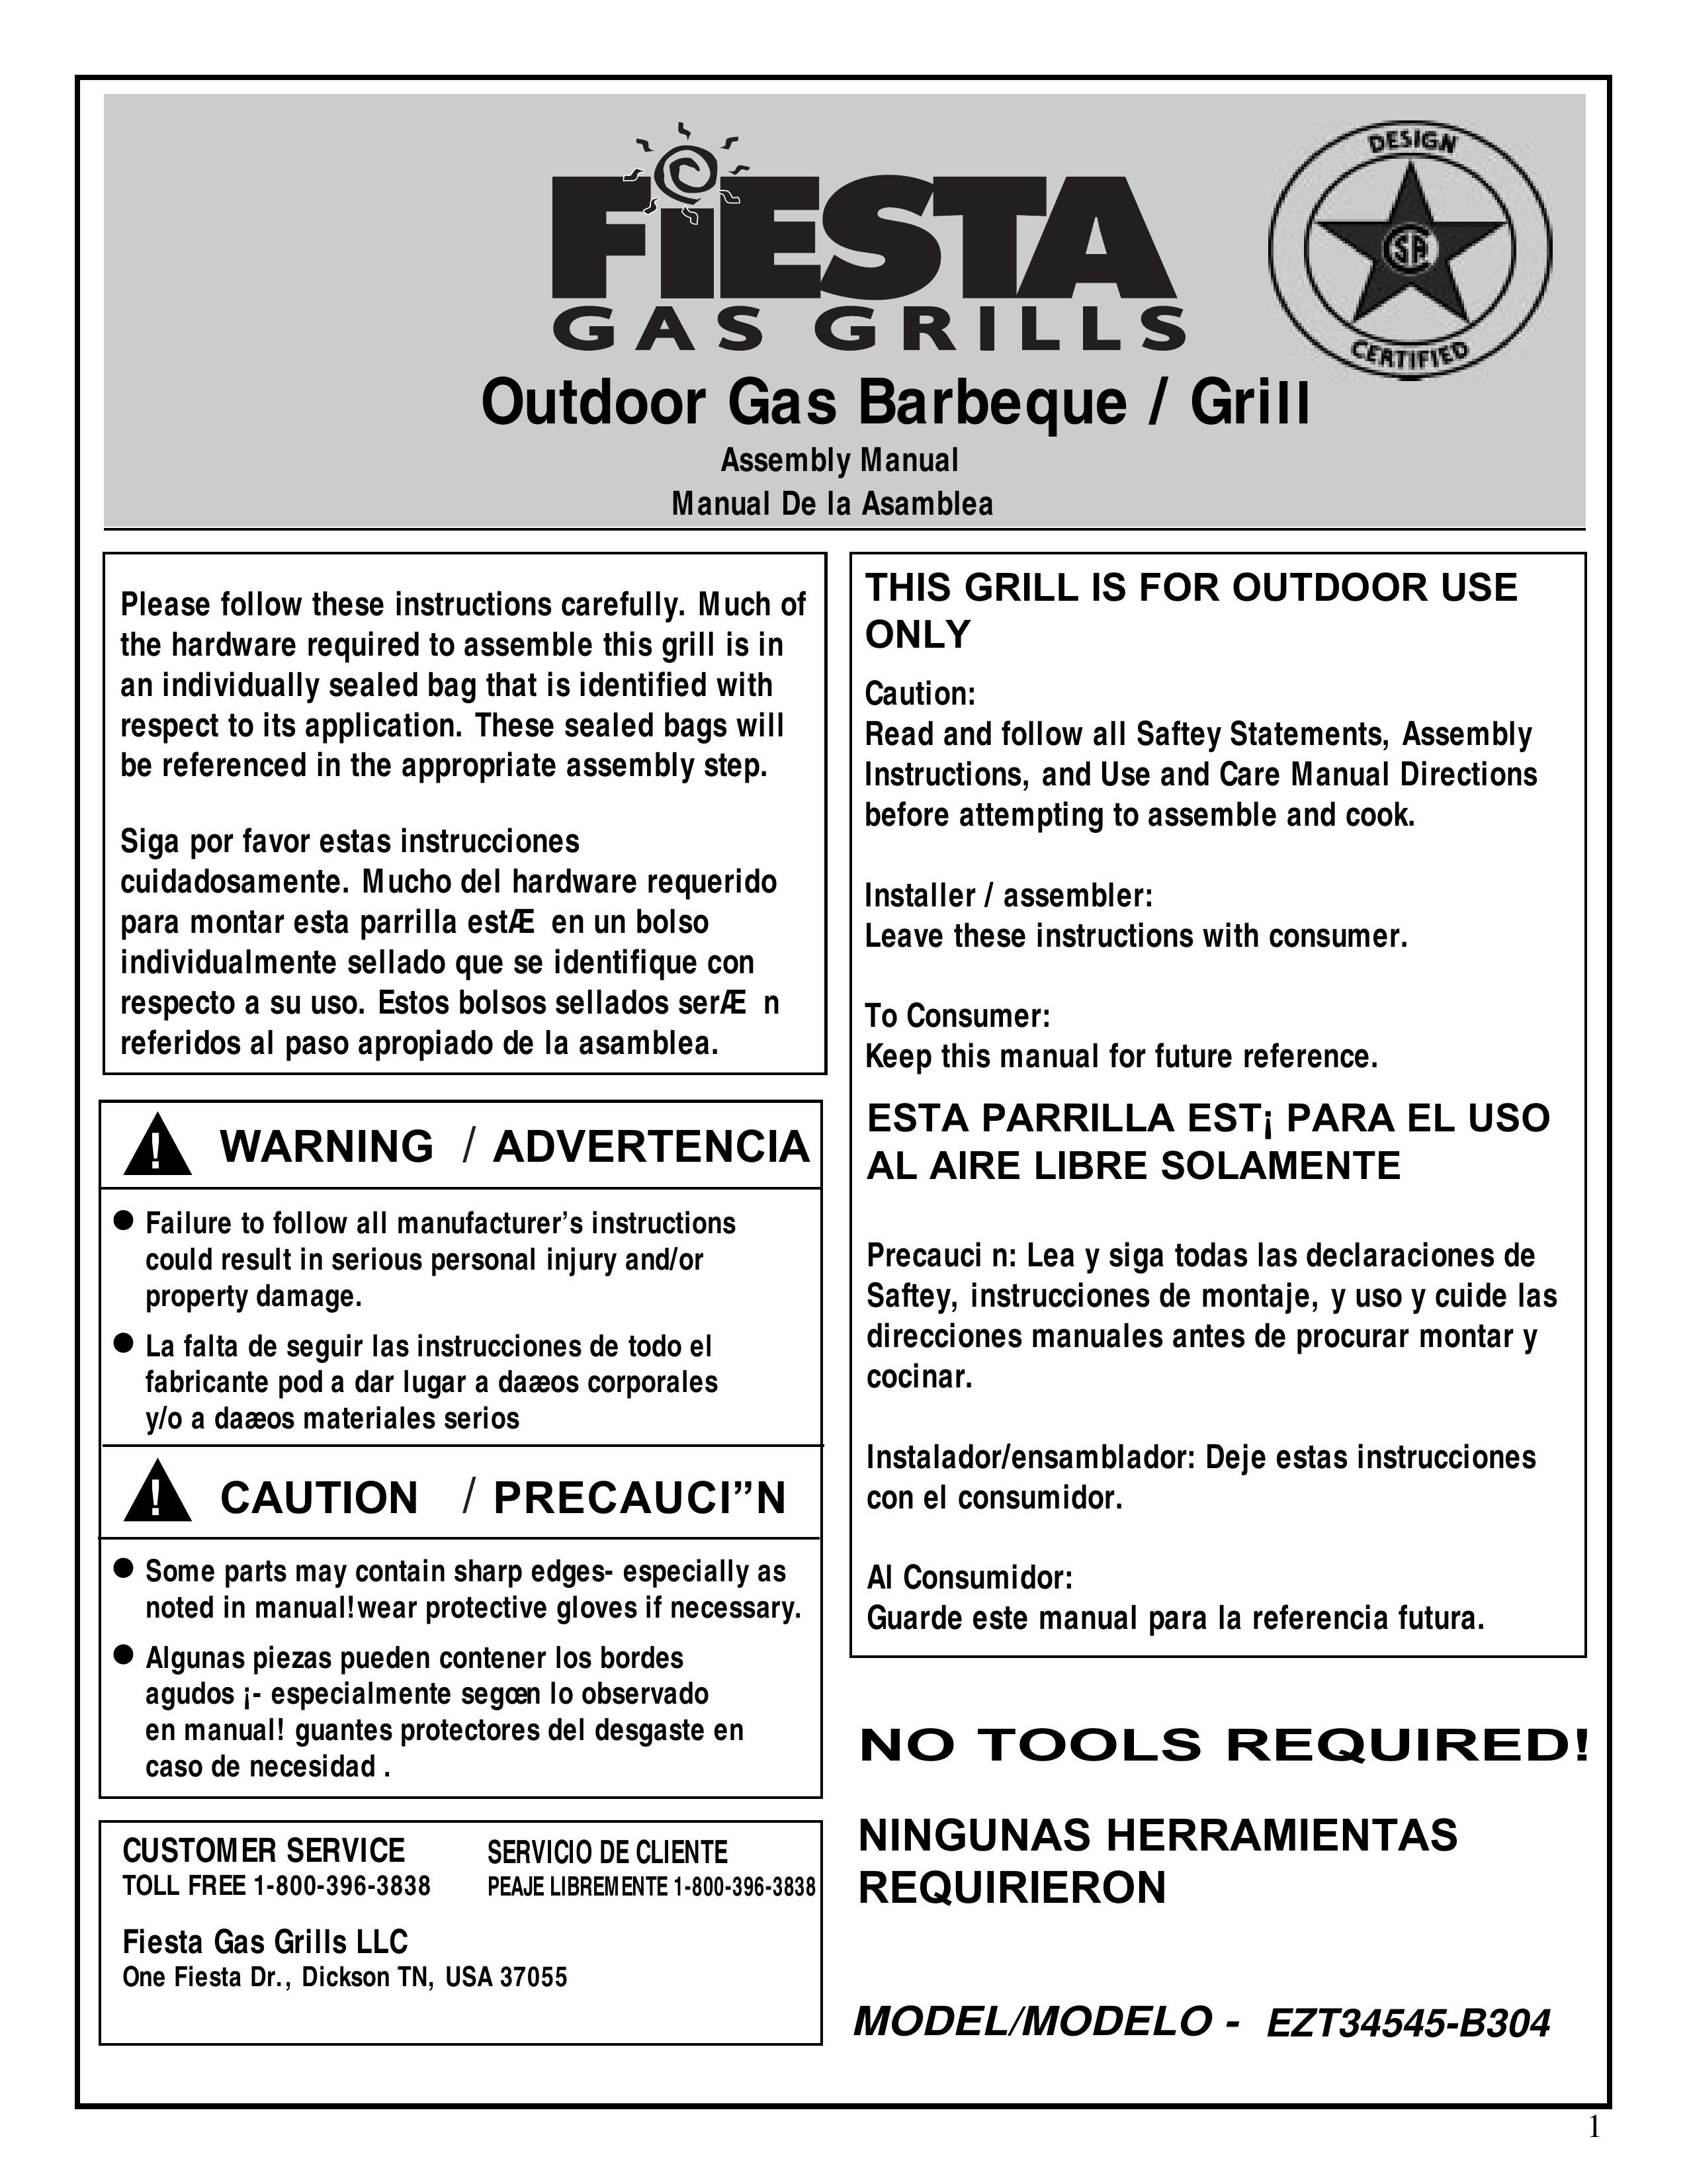 Fiesta EZT34545-B304 Gas Grill User Manual